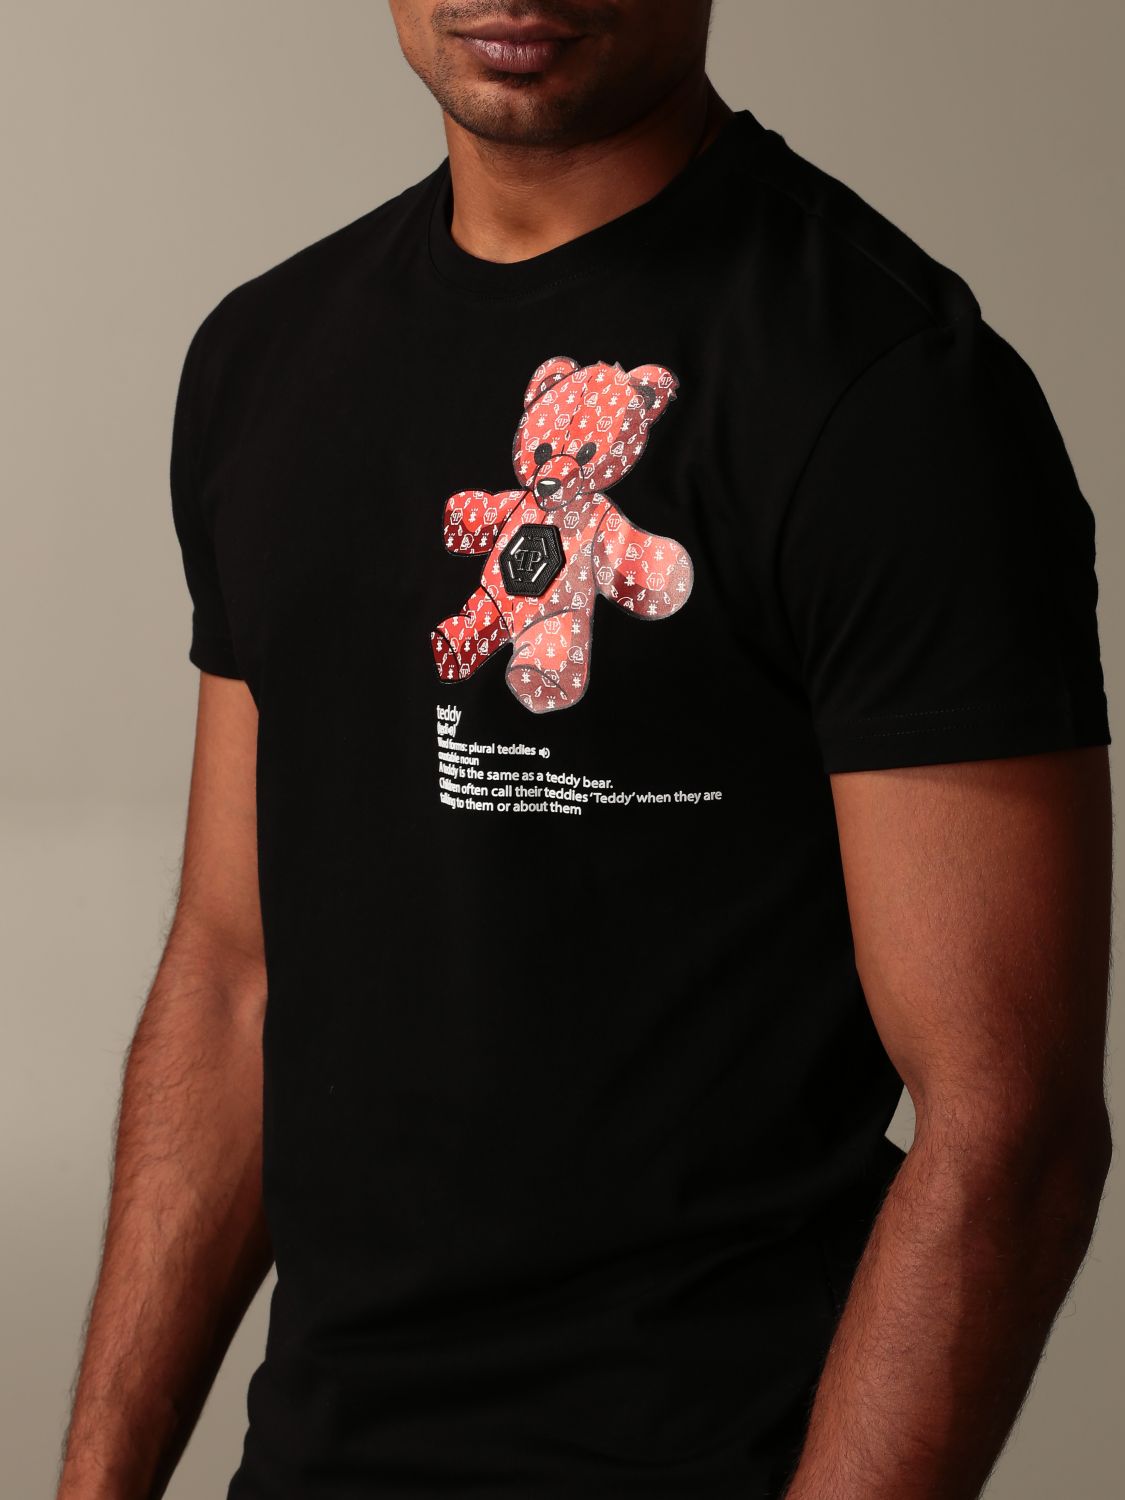 shirt with teddy bear logo